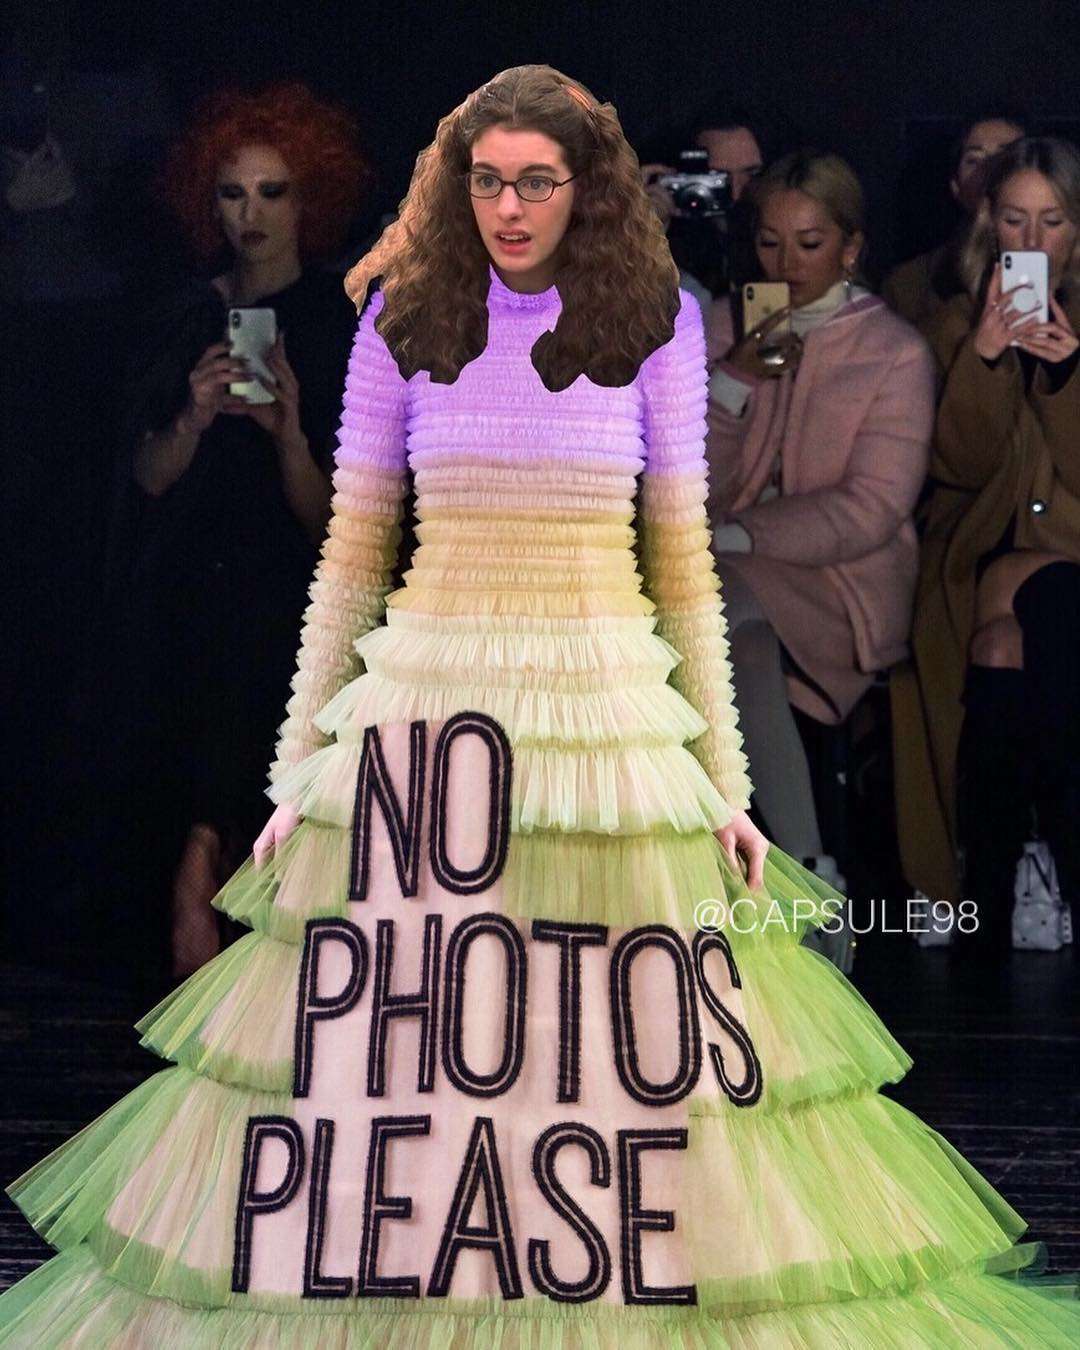 No photos please: дизайнери створили плаття з мемами, а вони знову стали мемами - фото 419661